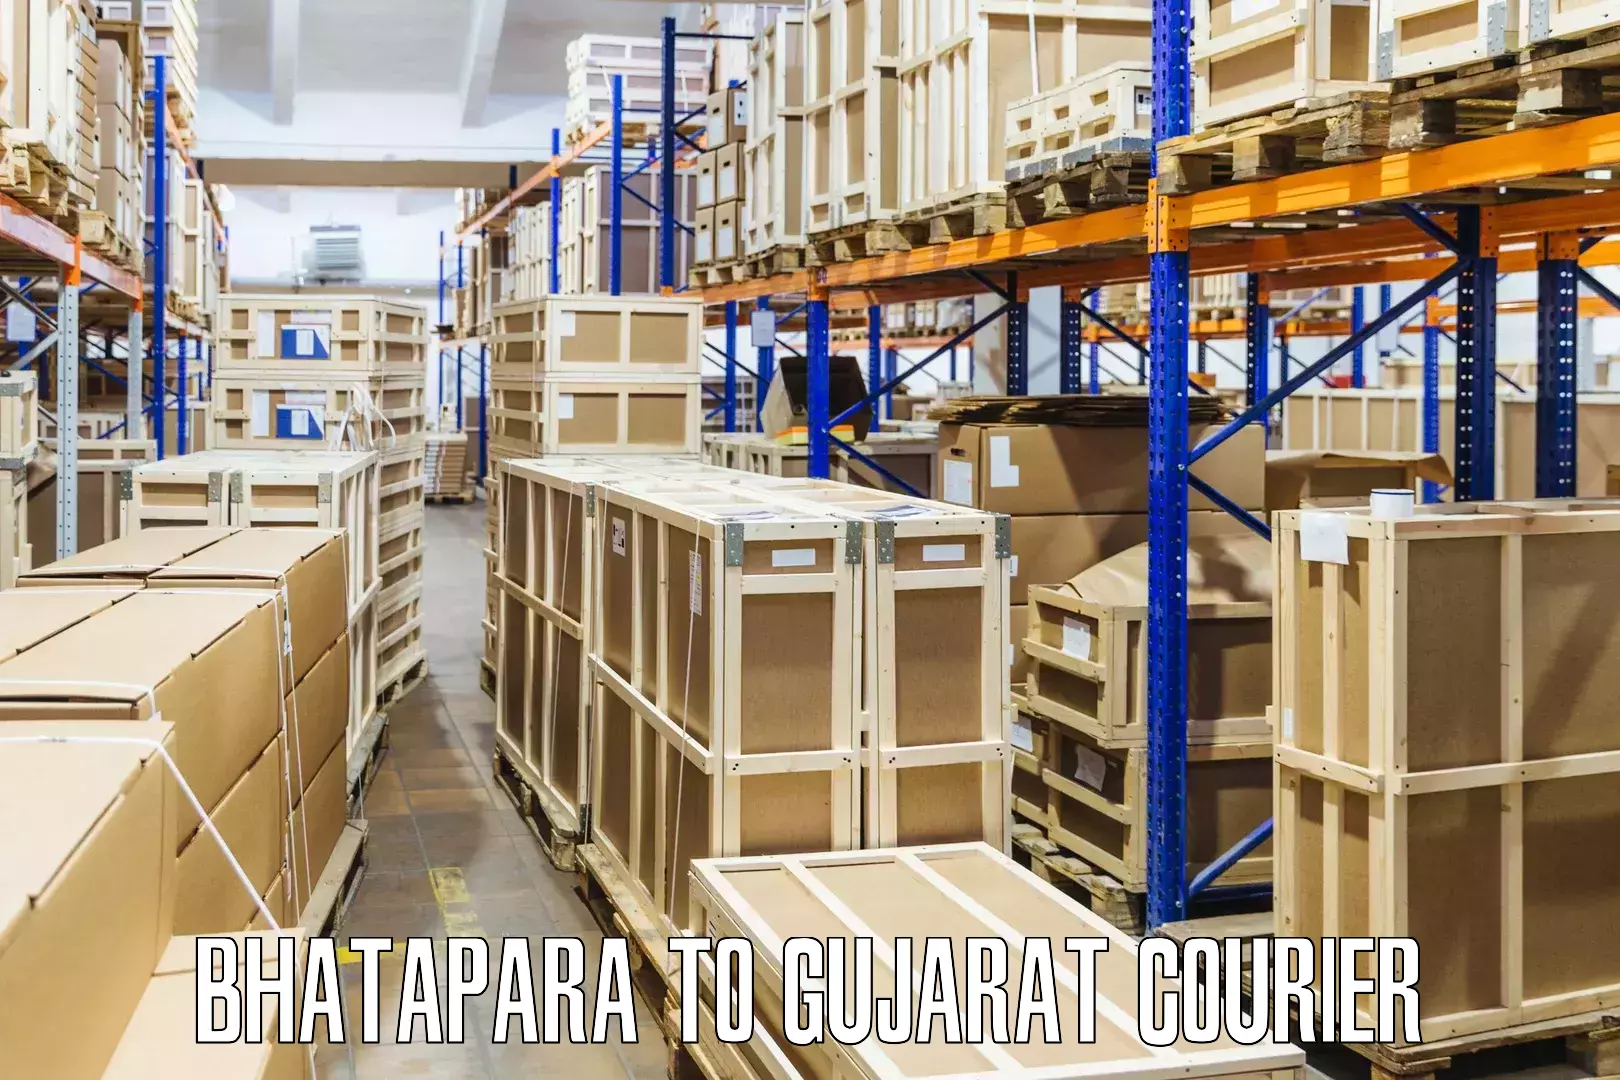 Bulk courier orders Bhatapara to Upleta